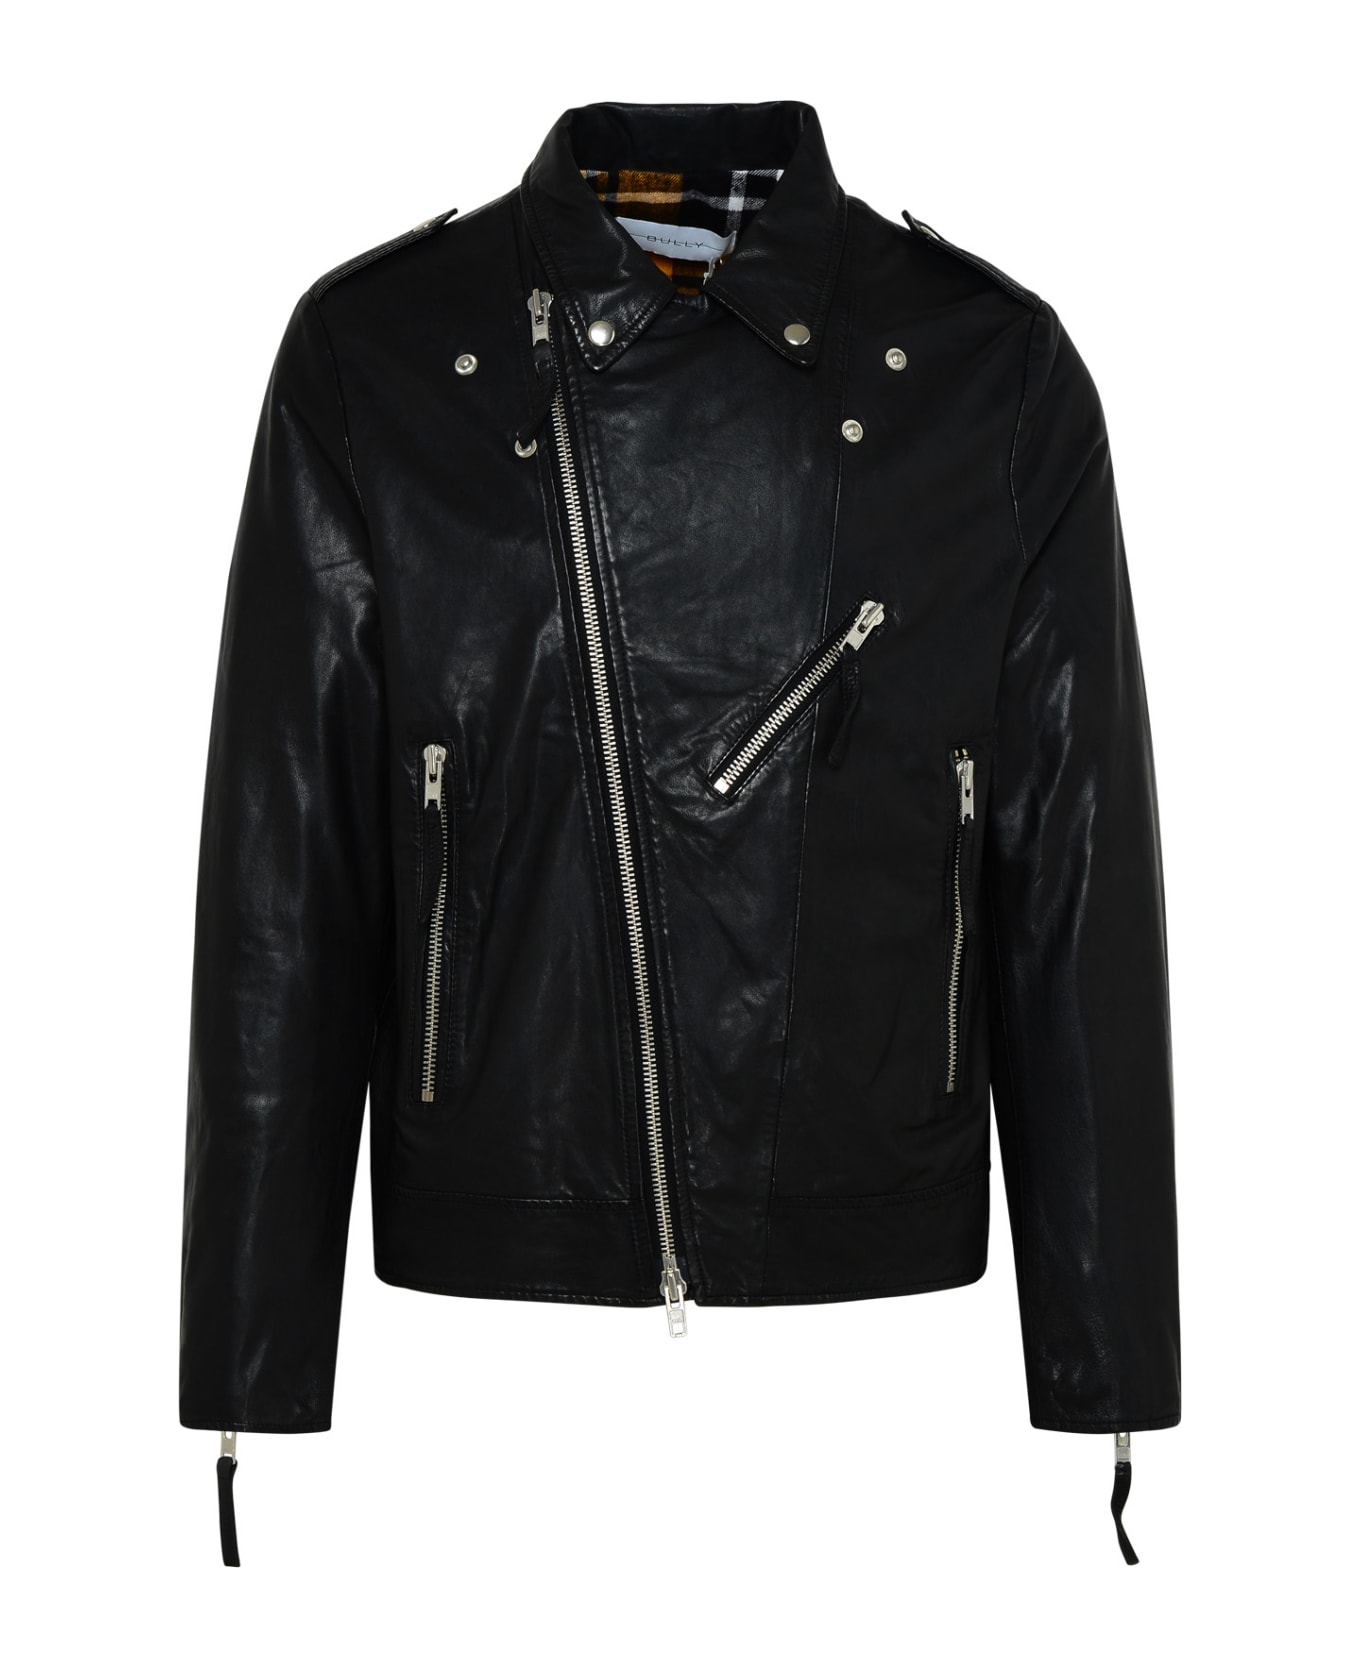 Bully Black Genuine Leather Jacket - Black レザージャケット